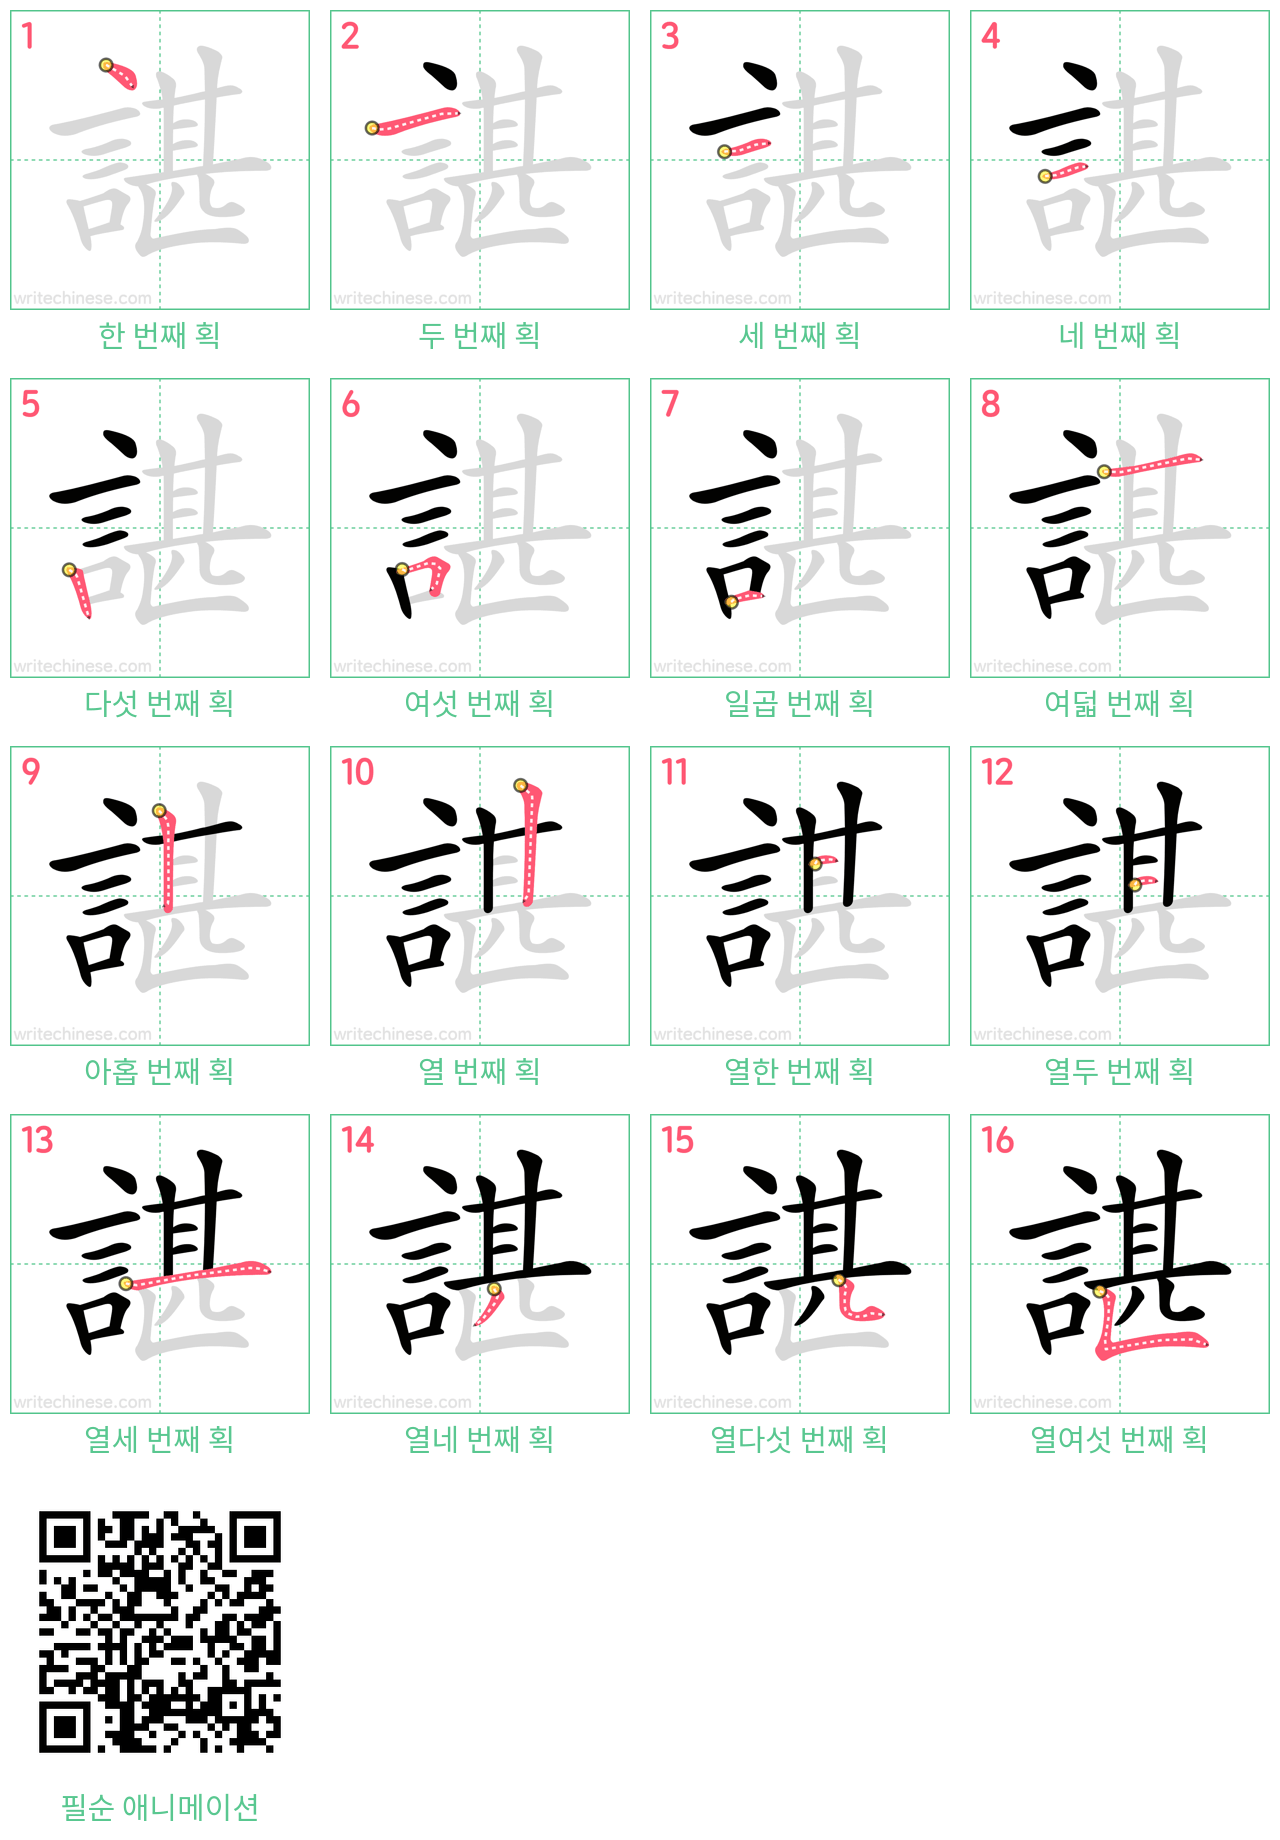 諶 step-by-step stroke order diagrams